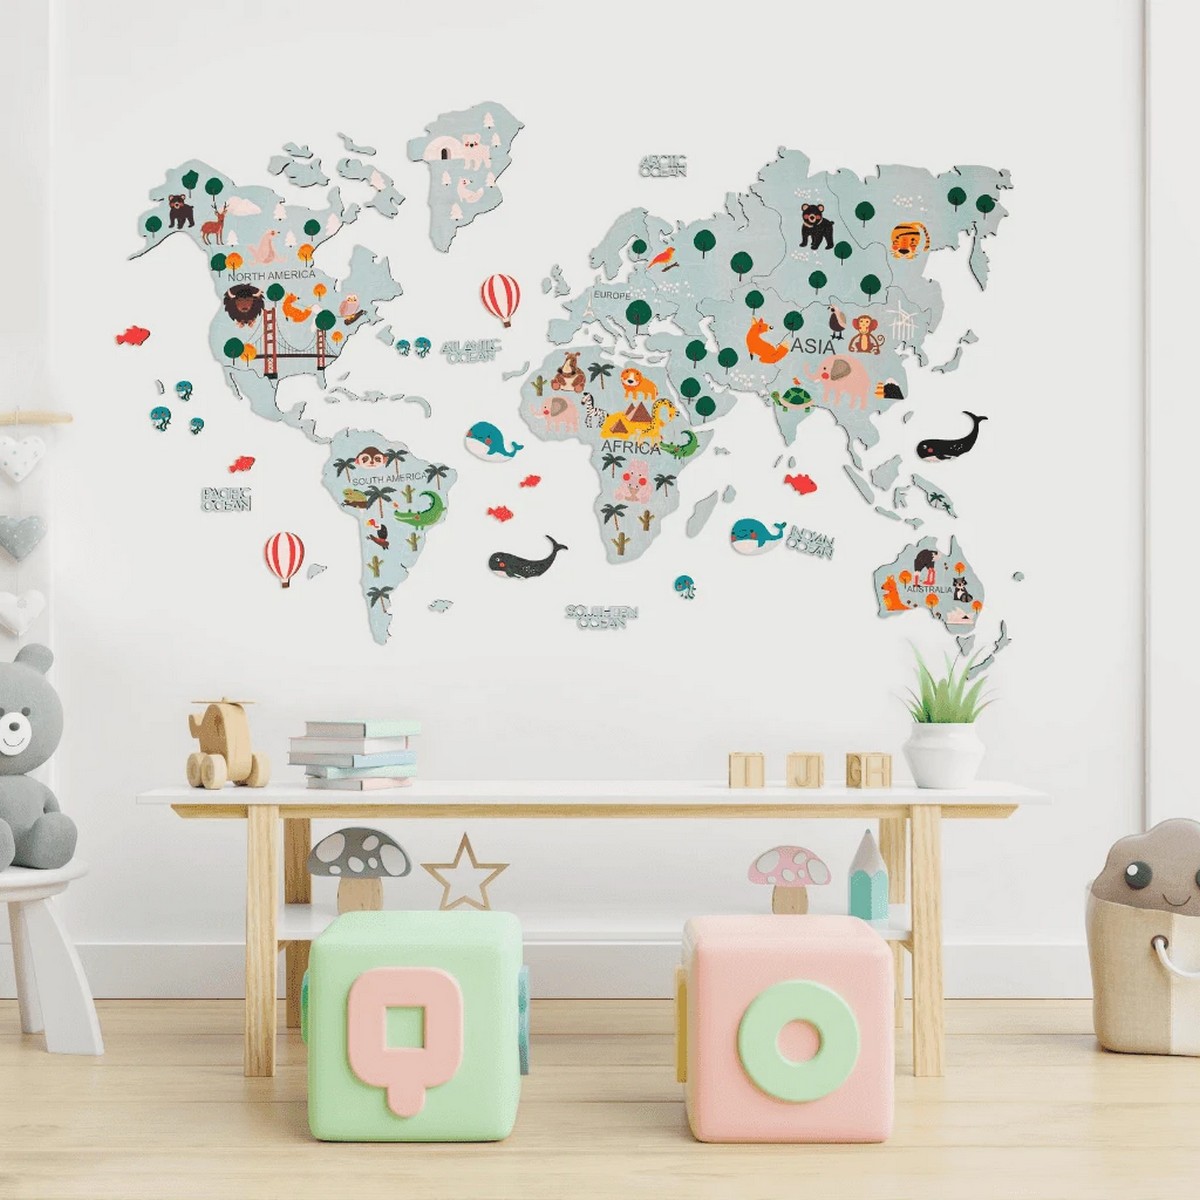 barnas verdenskart på veggen